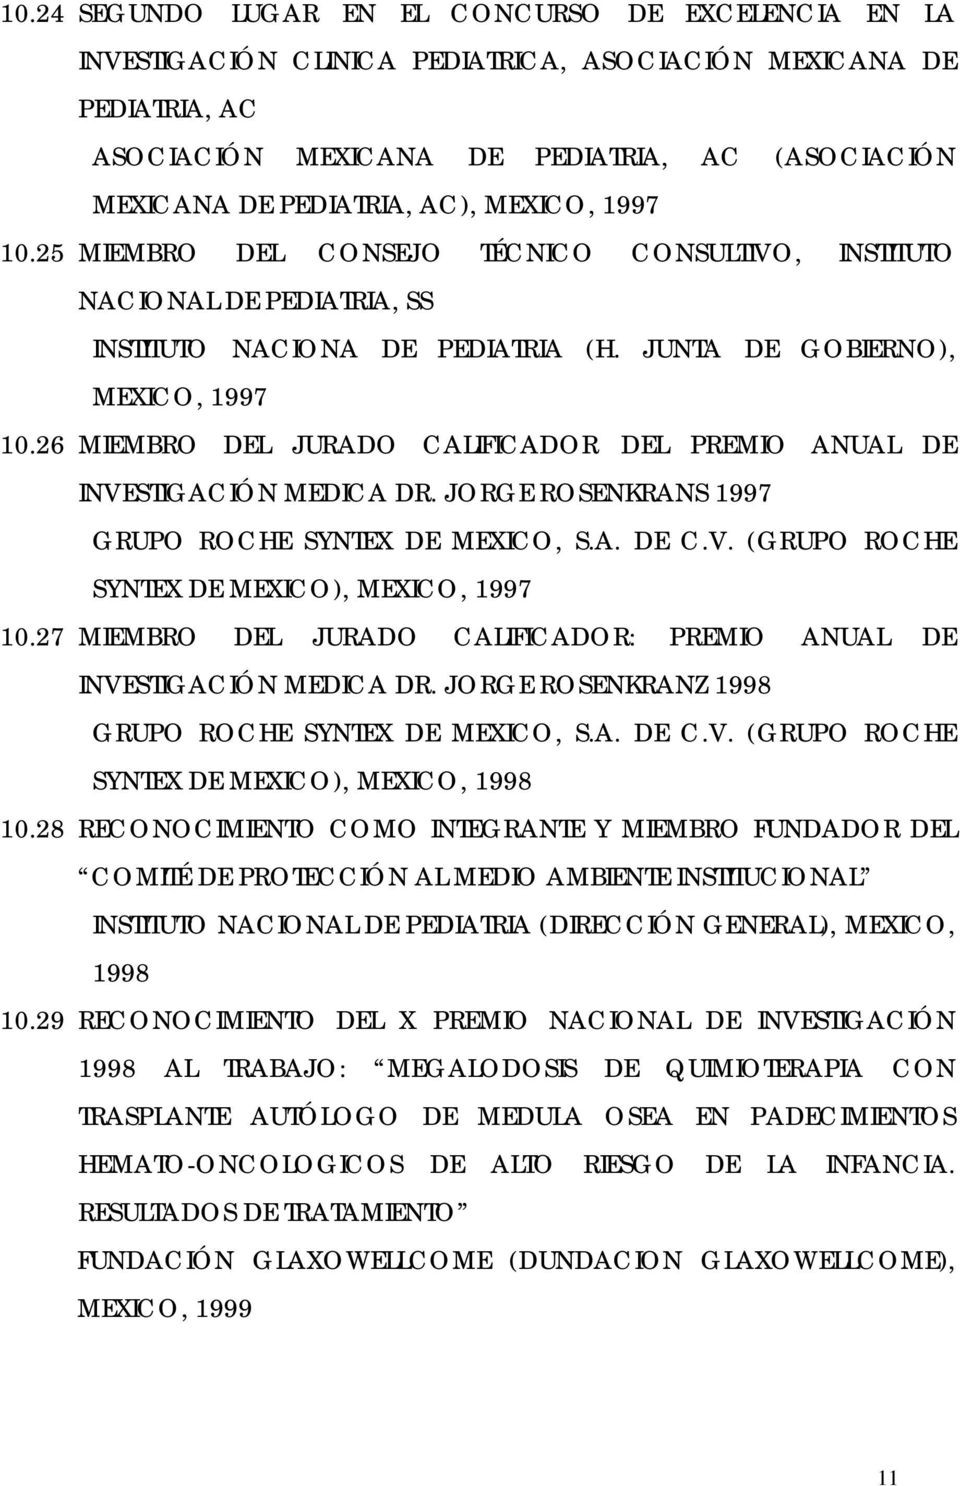 26 MIEMBRO DEL JURADO CALIFICADOR DEL PREMIO ANUAL DE INVESTIGACIÓN MEDICA DR. JORGE ROSENKRANS 1997 GRUPO ROCHE SYNTEX DE MEXICO, S.A. DE C.V. (GRUPO ROCHE SYNTEX DE MEXICO), MEXICO, 1997 10.